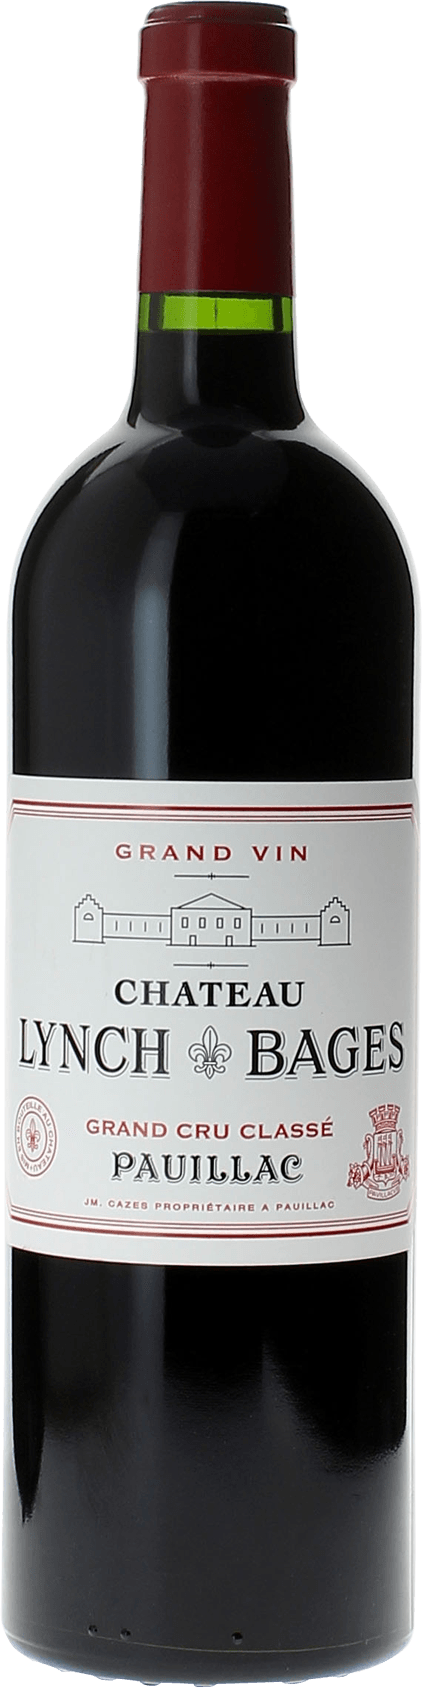 Lynch bages 2021 5 me Grand cru class Pauillac, Bordeaux rouge